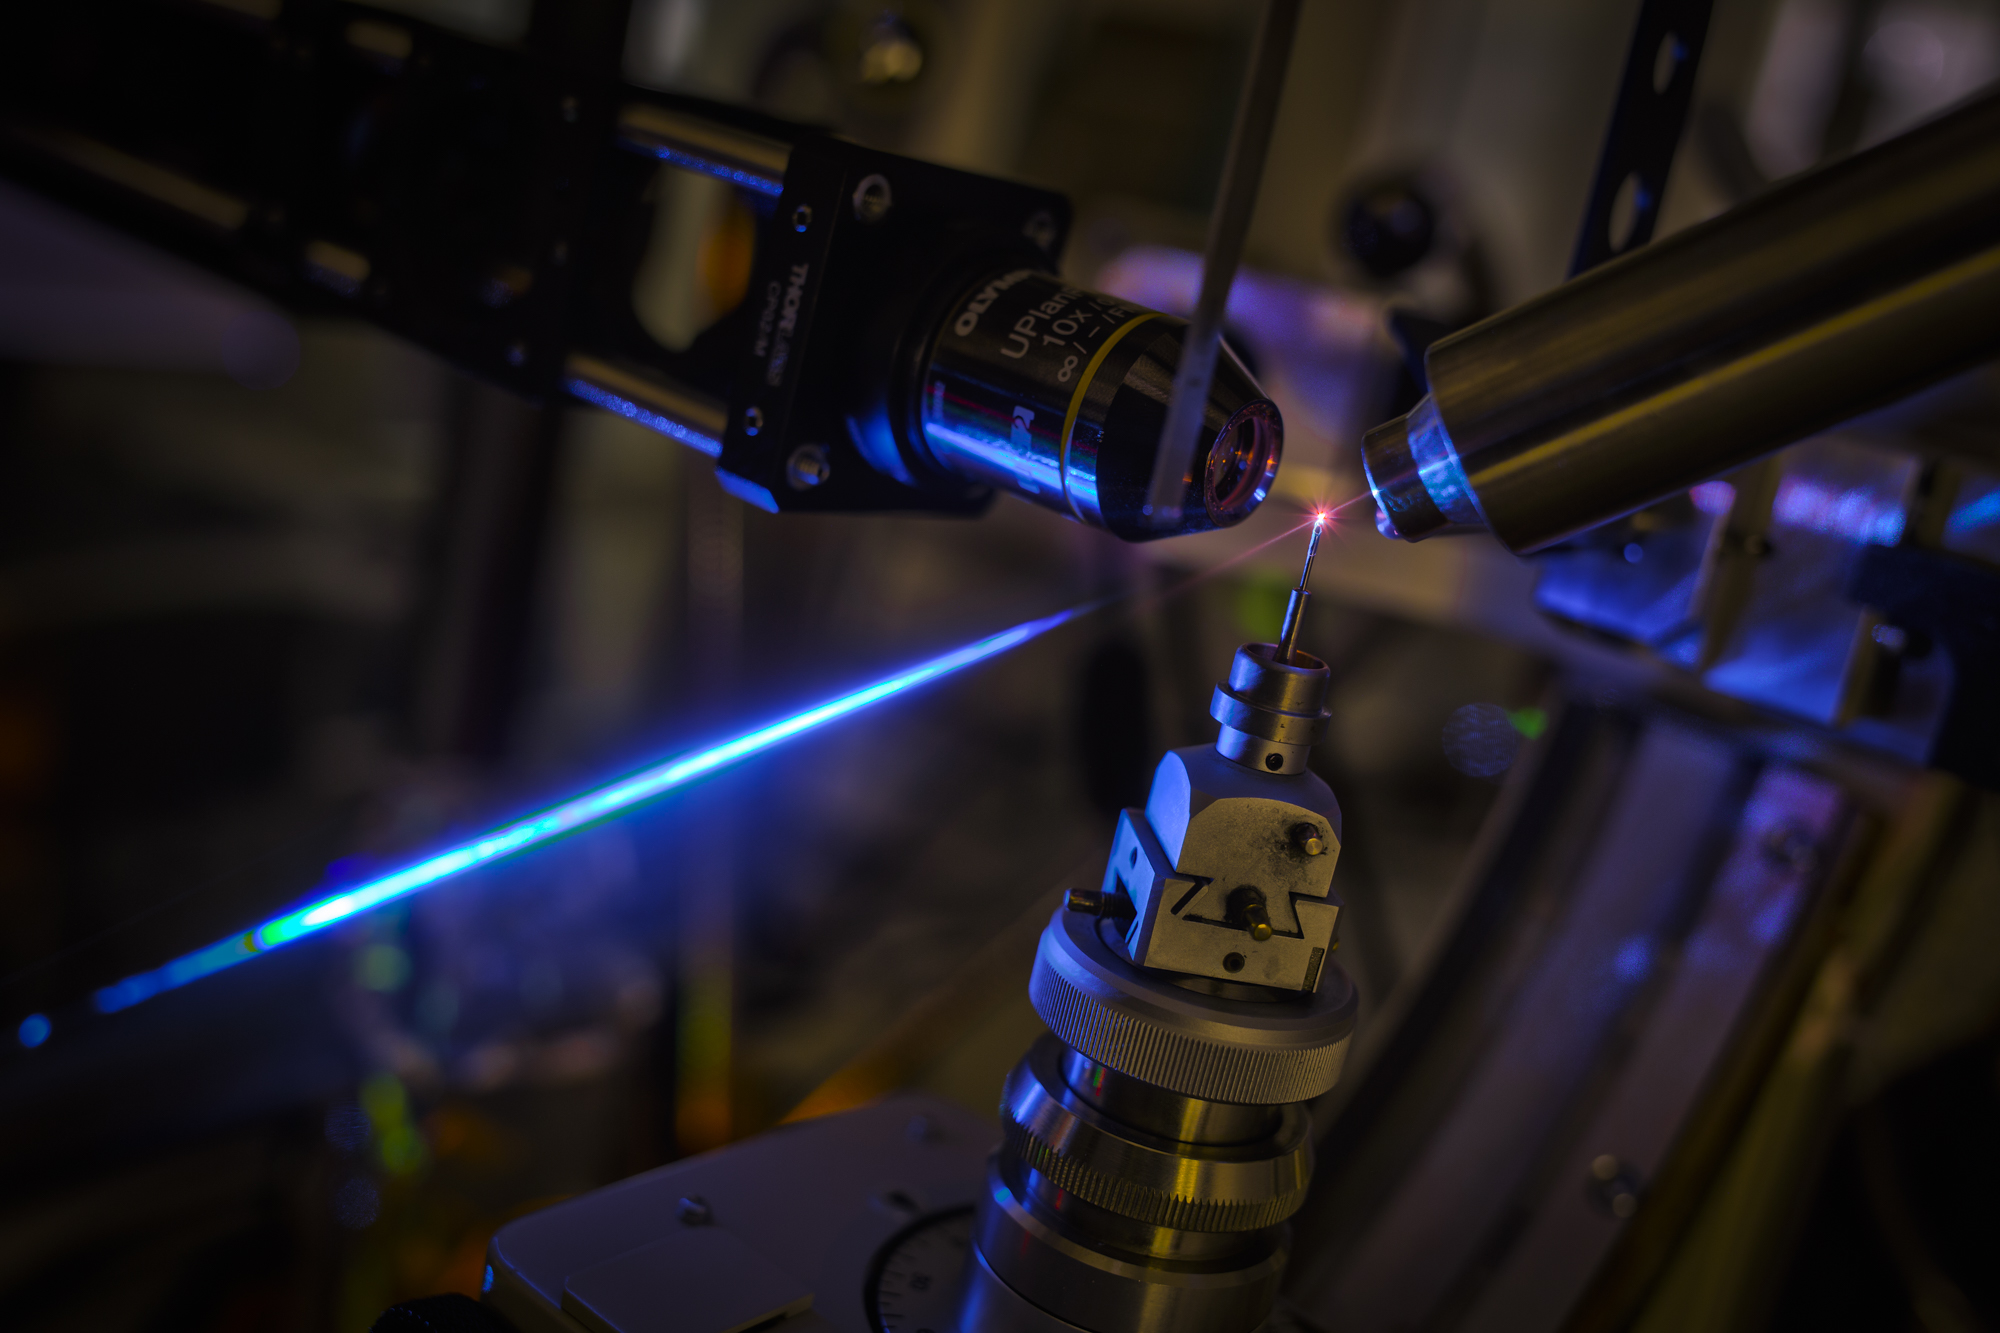 Krystal červeného fluorescentního proteinu umístěný v kombinovaném přístroji sestávajícím z fluorescenčního mikroskopu a rentgenového difraktometru. Krystal fluoreskuje červeně při osvětlení modrým laserovým svazkem. (Foto: Petr Pachl / ÚOCHB)